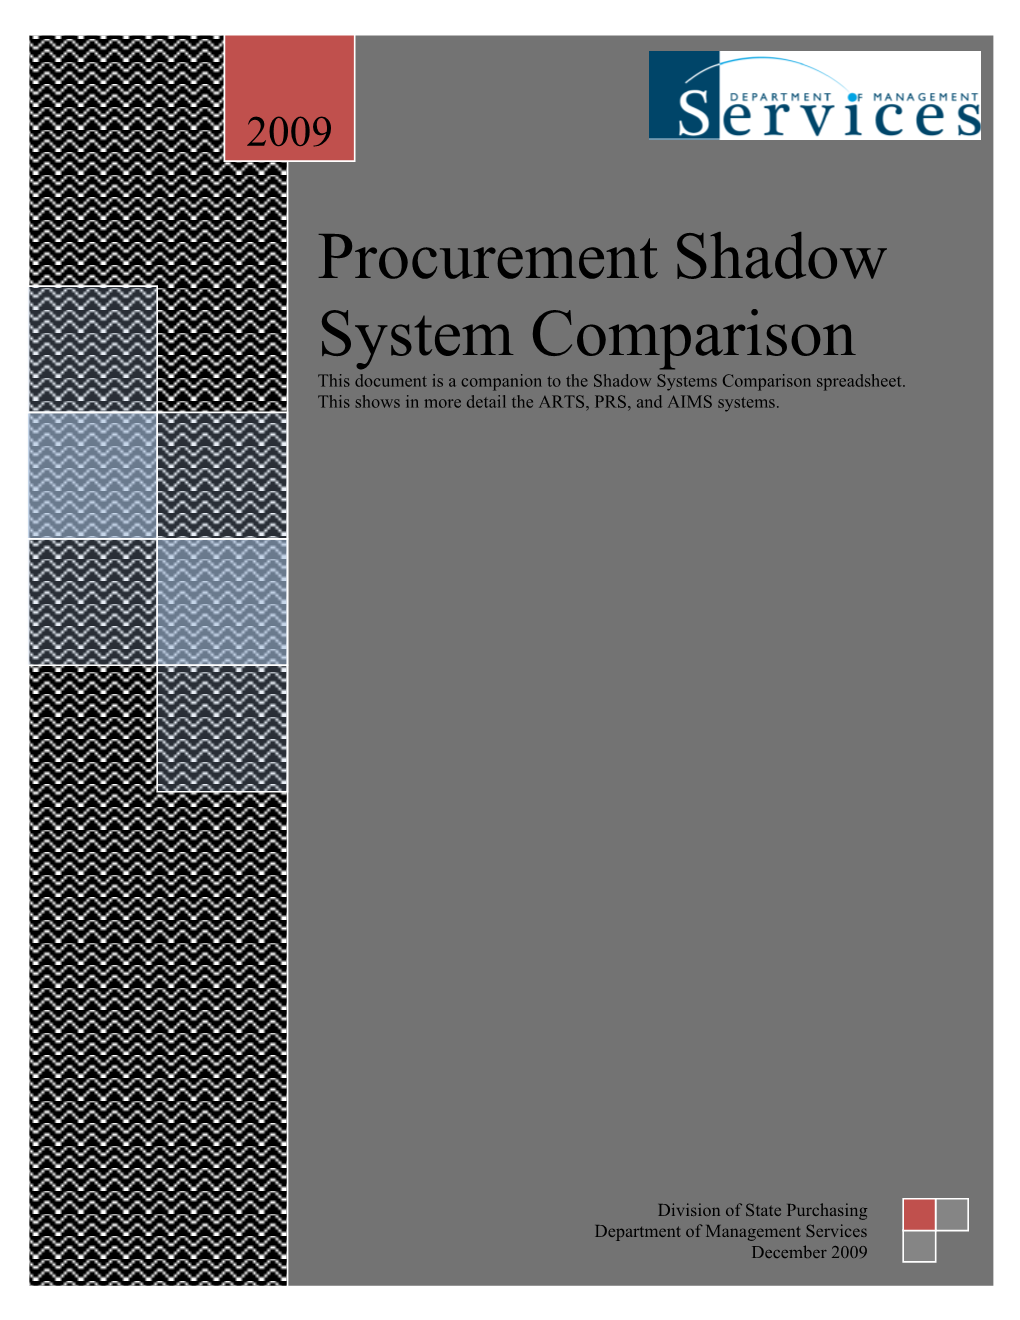 Procurement Shadow System Comparison